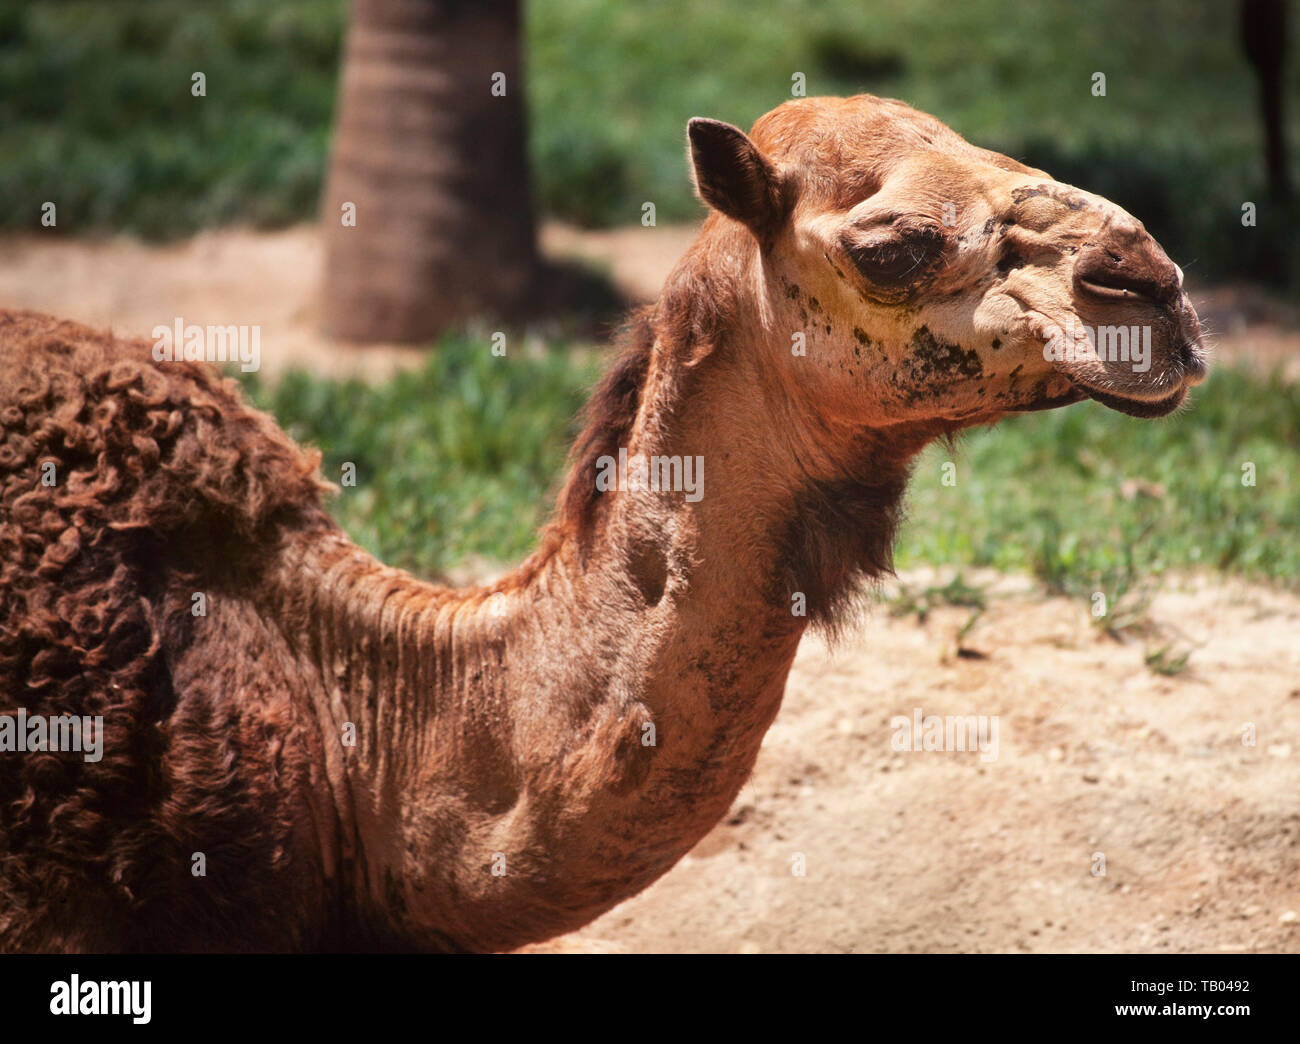 Dromedary camel (Camelus dromedarius) Stock Photo